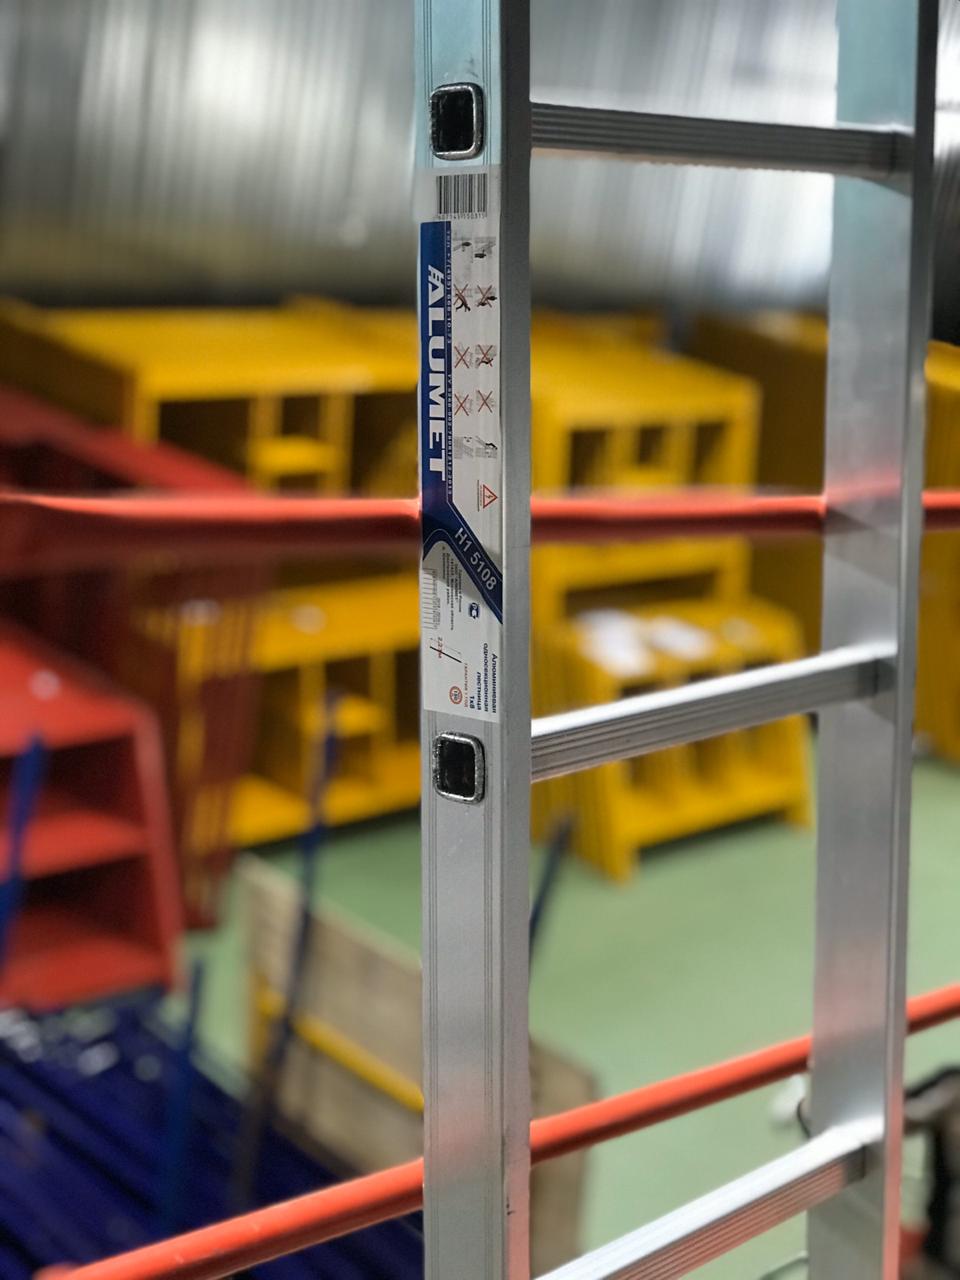 Дополнительное изображение Лестница Алюмет (Alumet) алюминиевая односекционная  стандарт (8 ступеней)